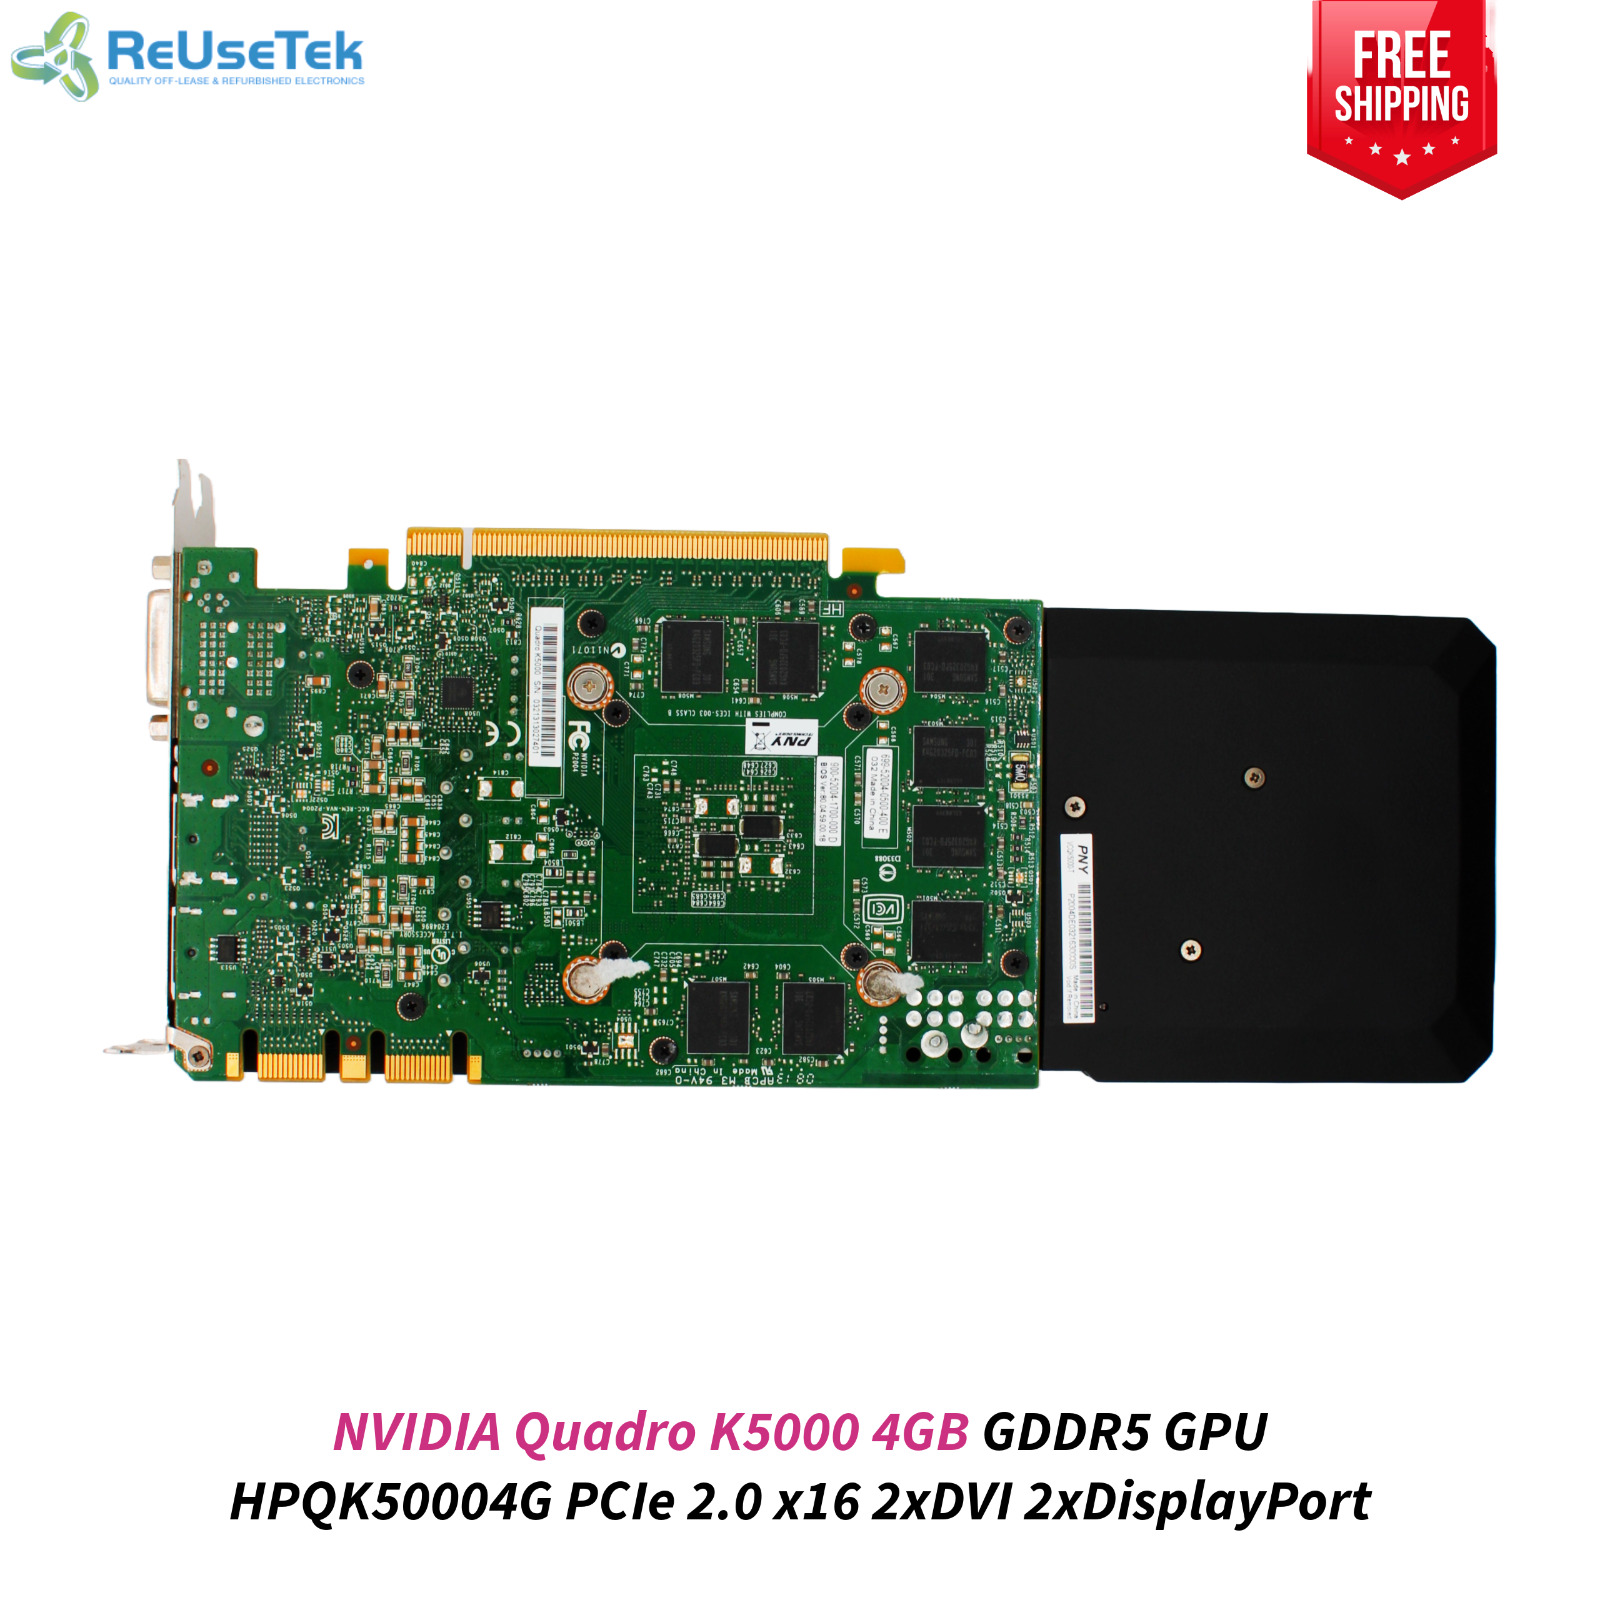 NVIDIA Quadro K5000 4GB GDDR5 GPU HPQK50004G PCIe 2.0 x16 2xDVI 2xDisplayPort